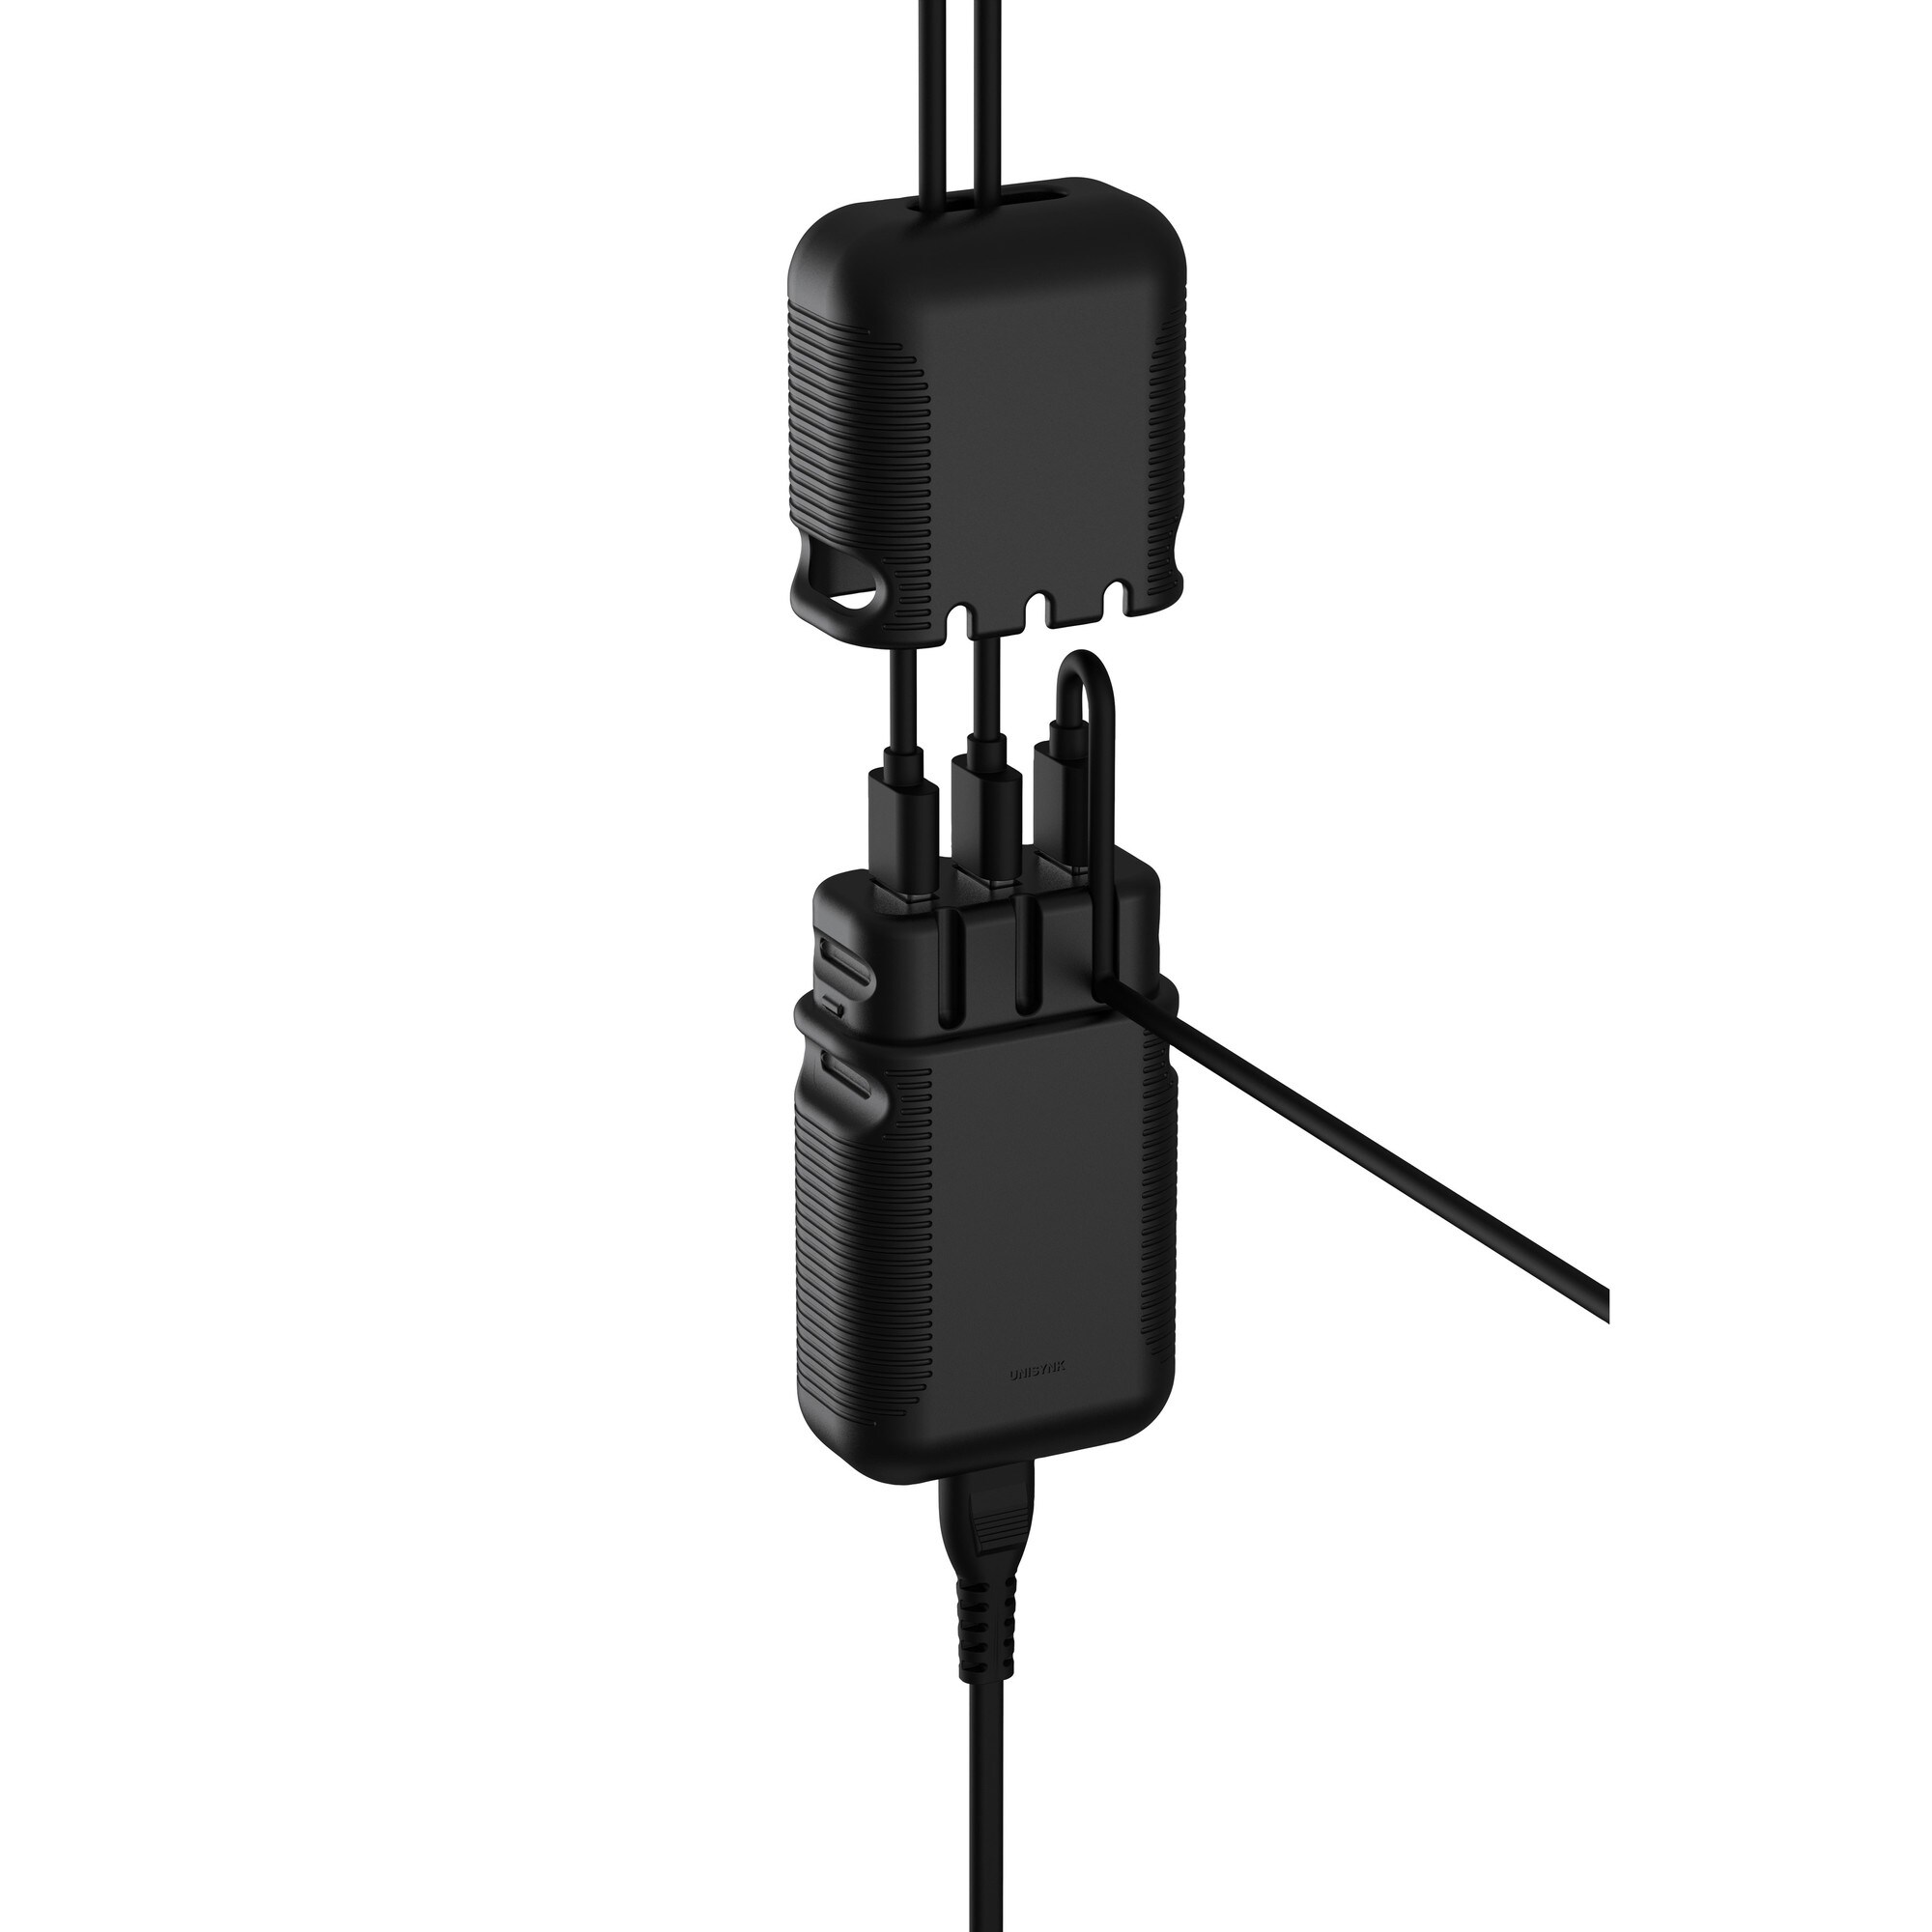 Unisynk Tripler USB multi-vegglader (sort) - Vegglader - Elkjøp